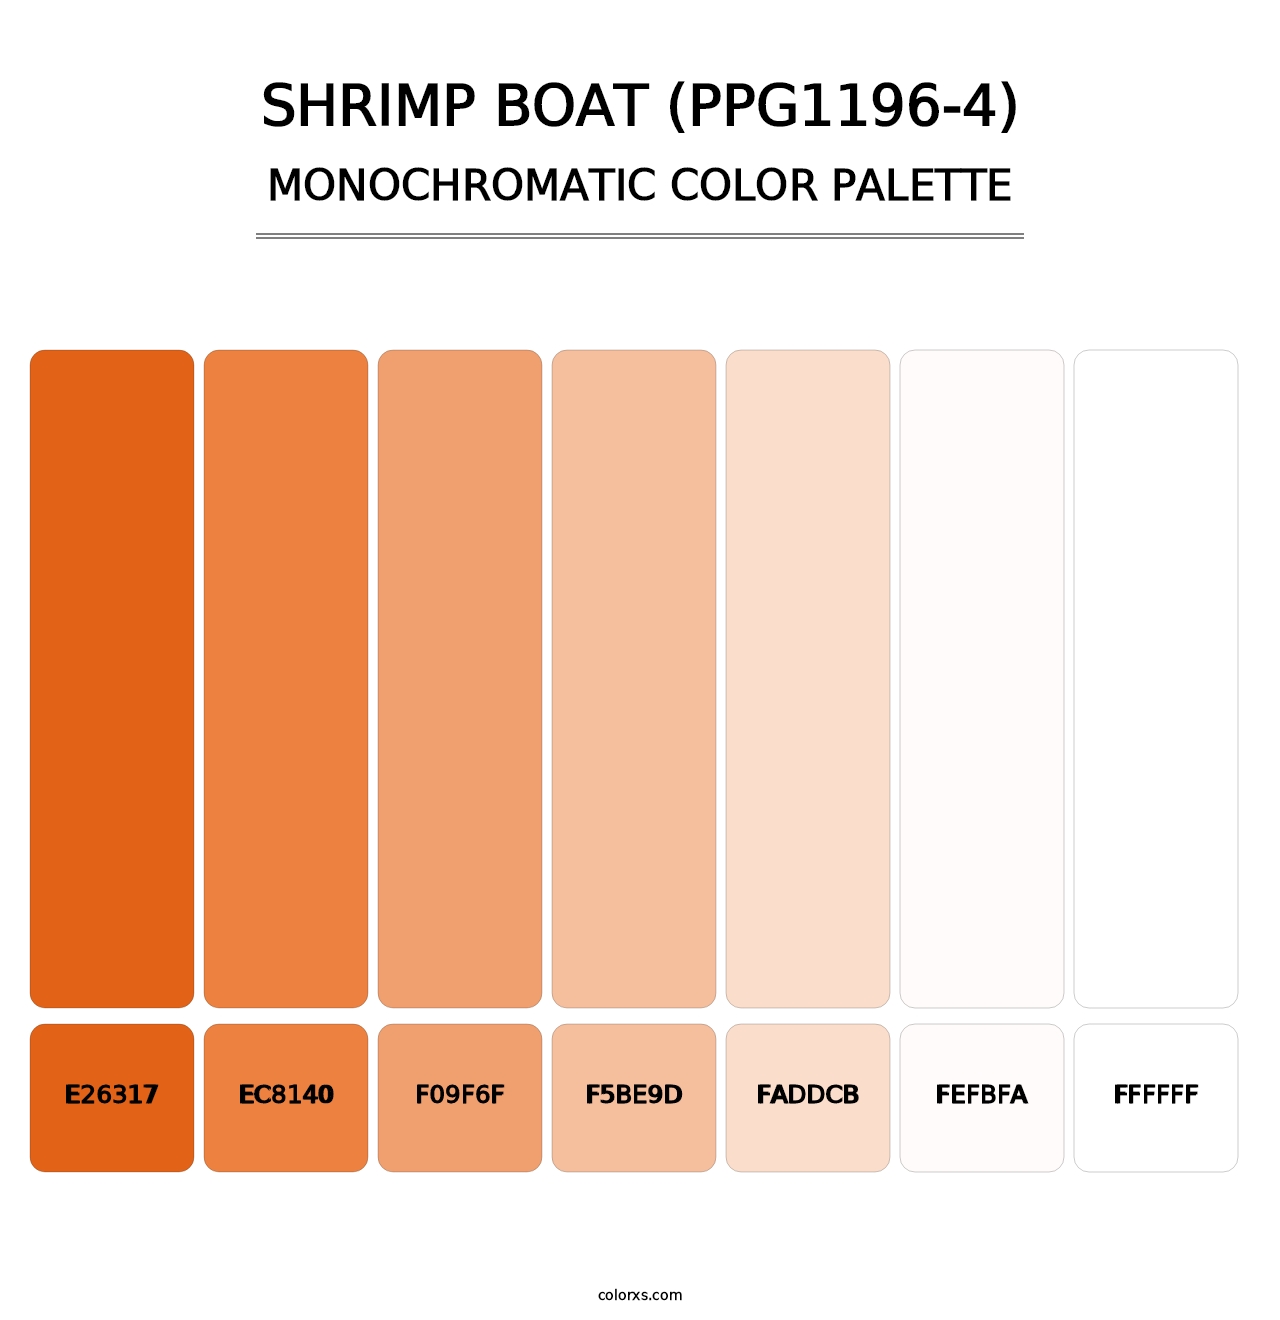 Shrimp Boat (PPG1196-4) - Monochromatic Color Palette